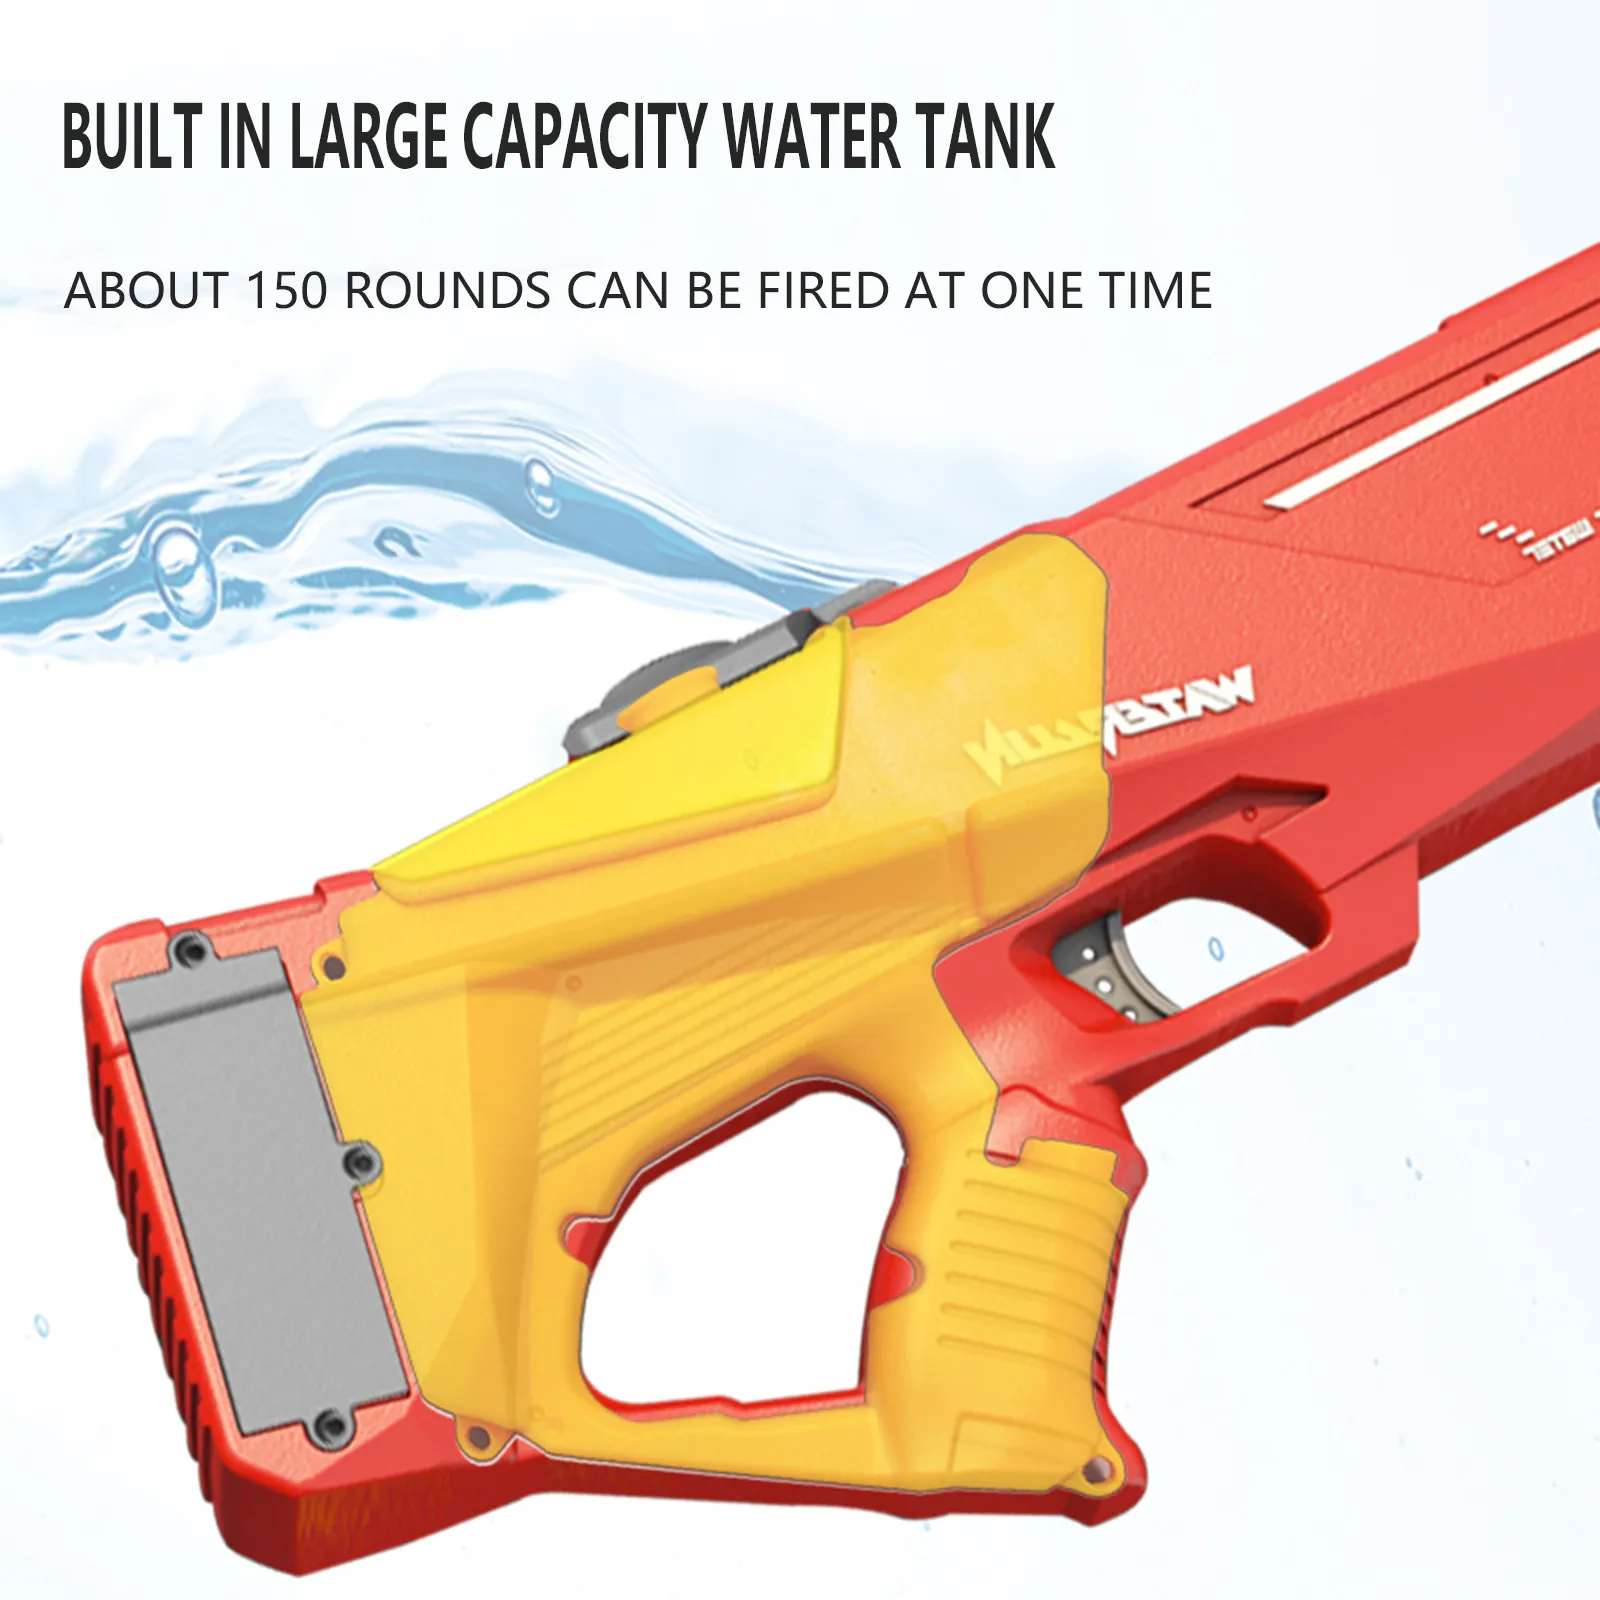 Electric Water Gun Large High Pressure Pistol Children Blaster